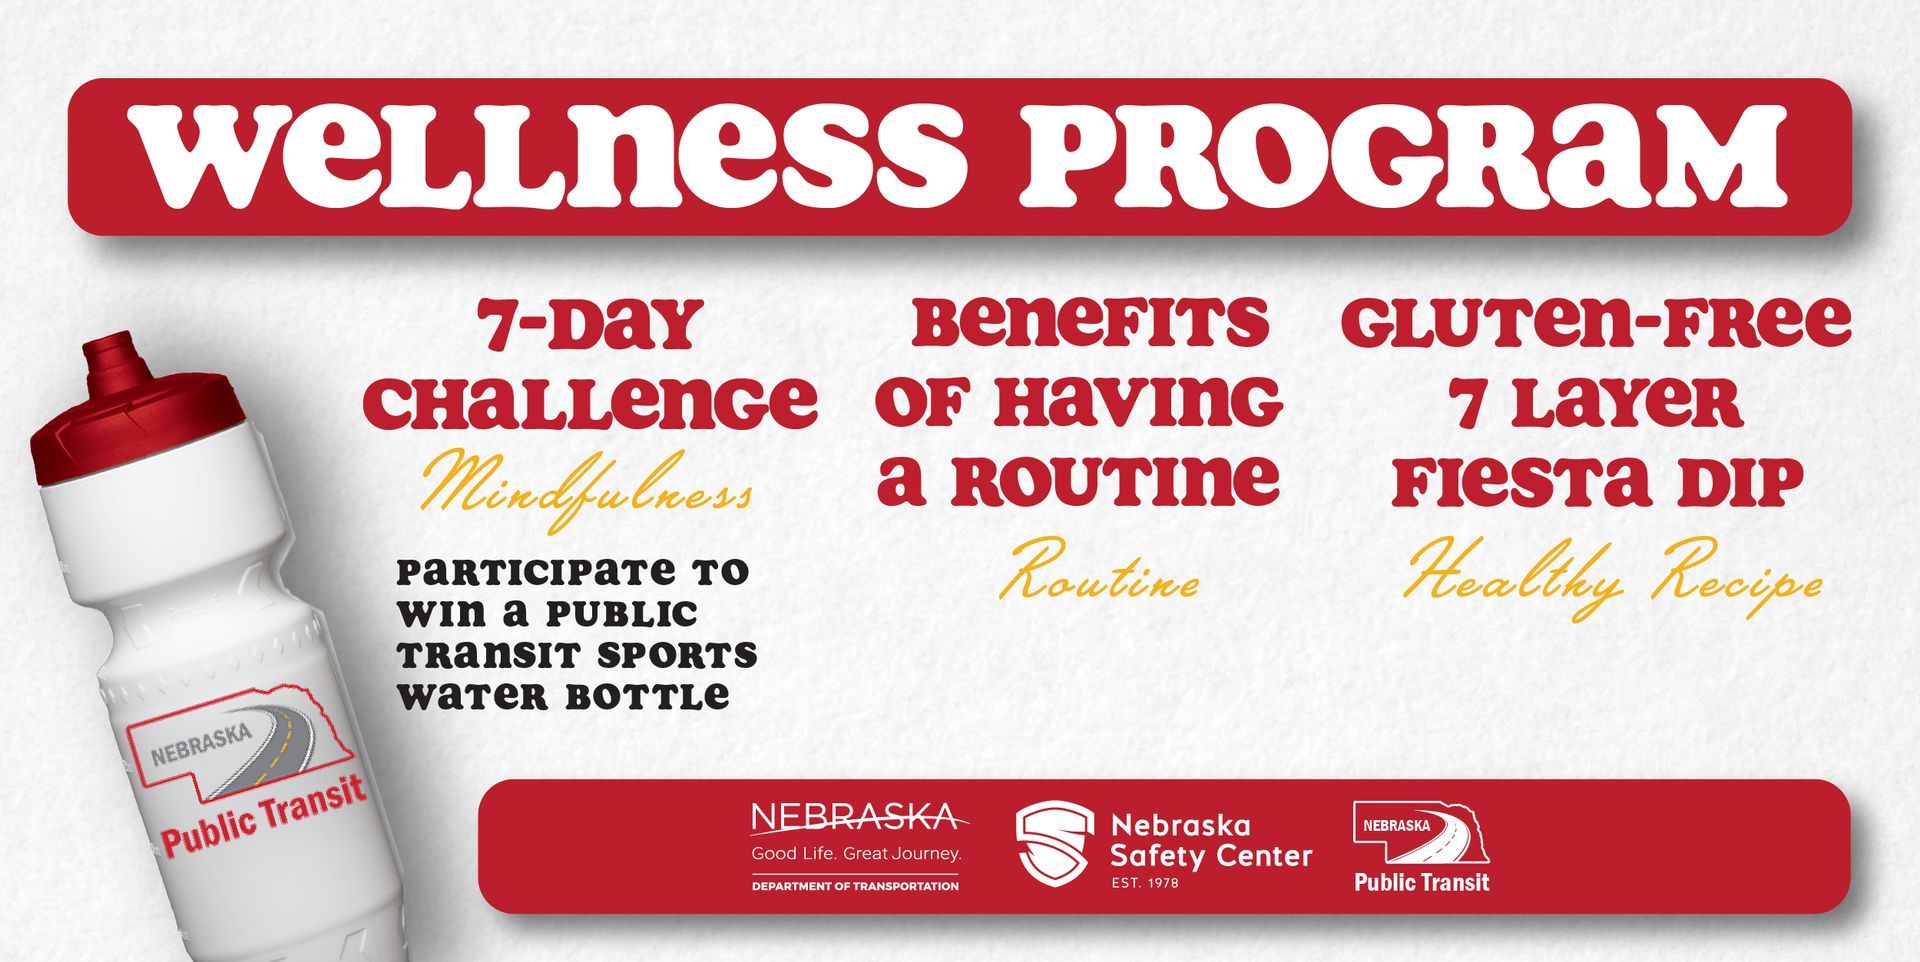 Nebraska Wellness Program Ad showing water bottle